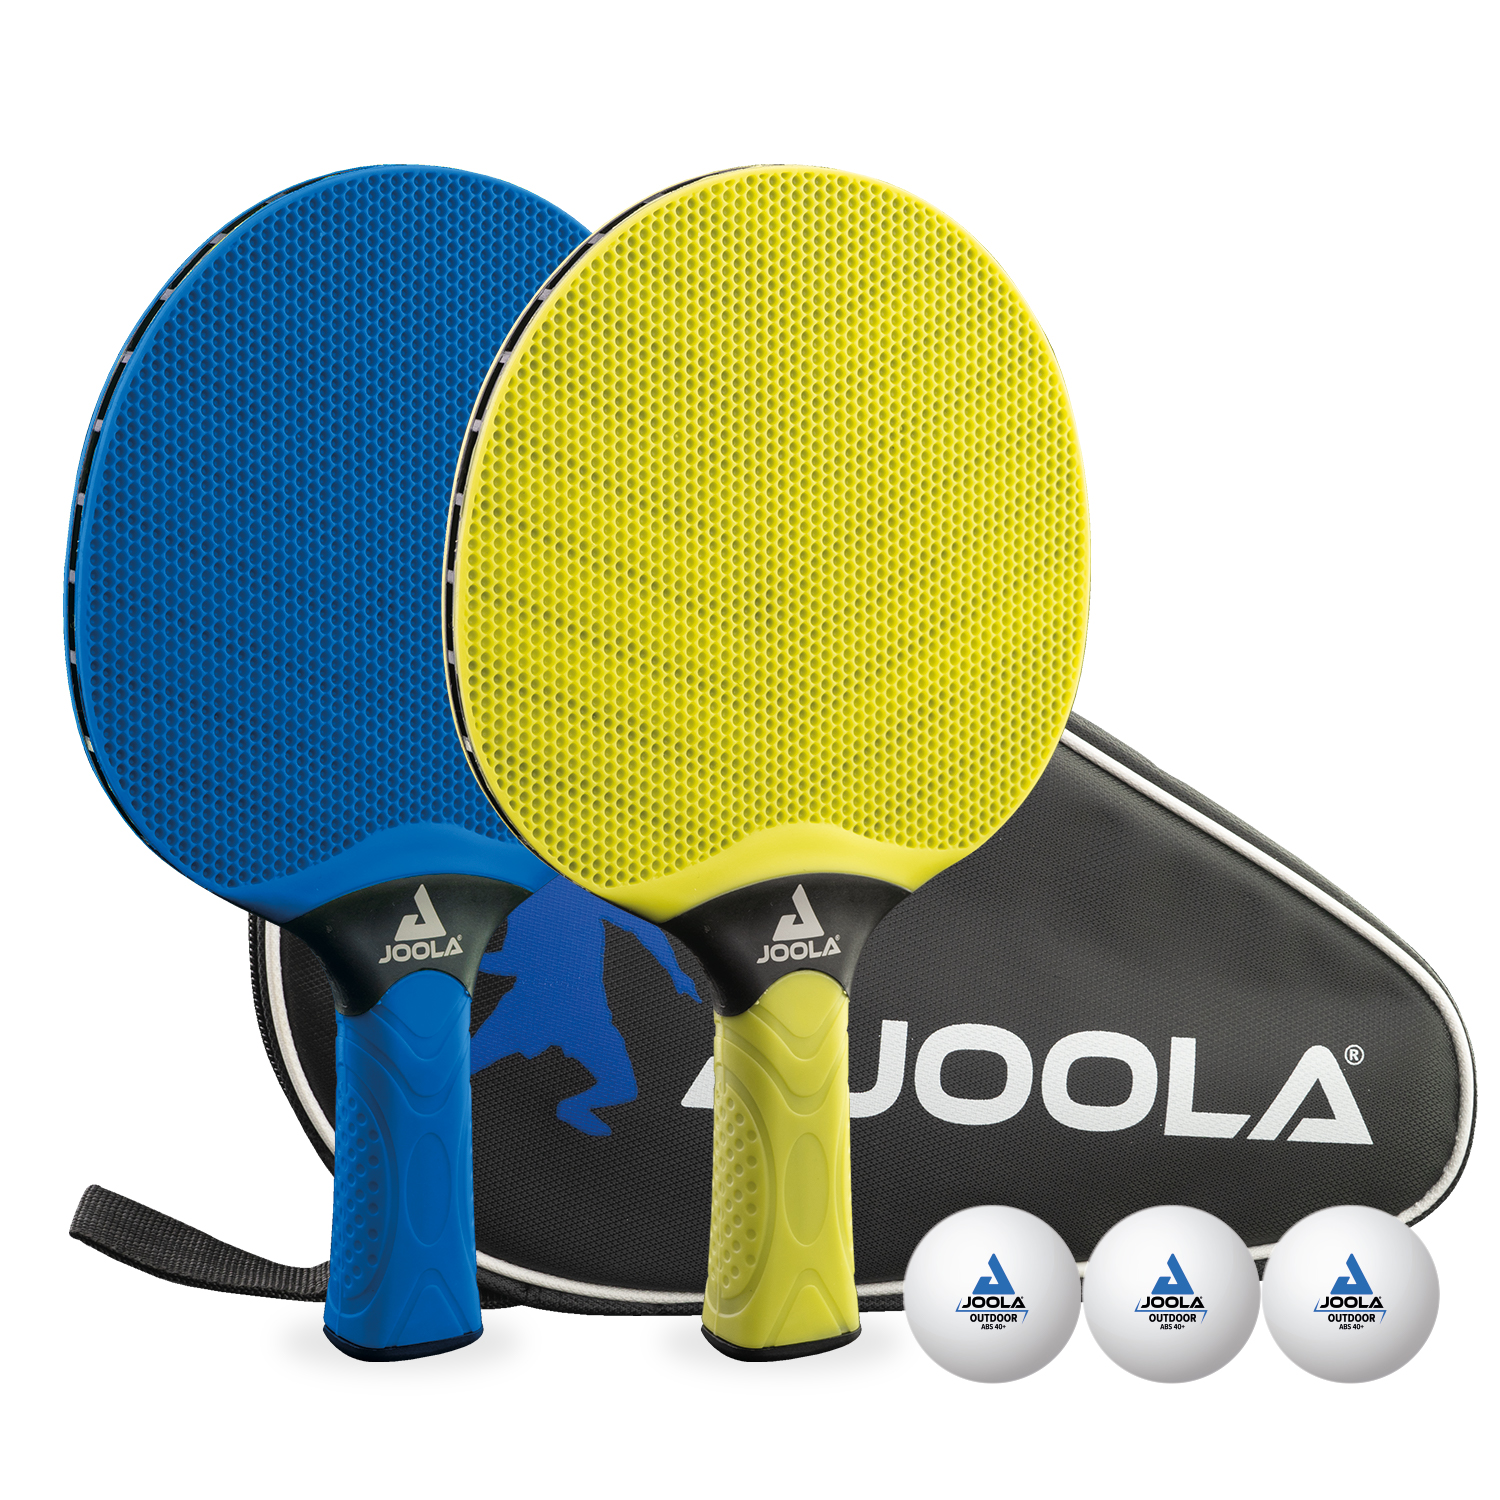 joola tischtennis shop